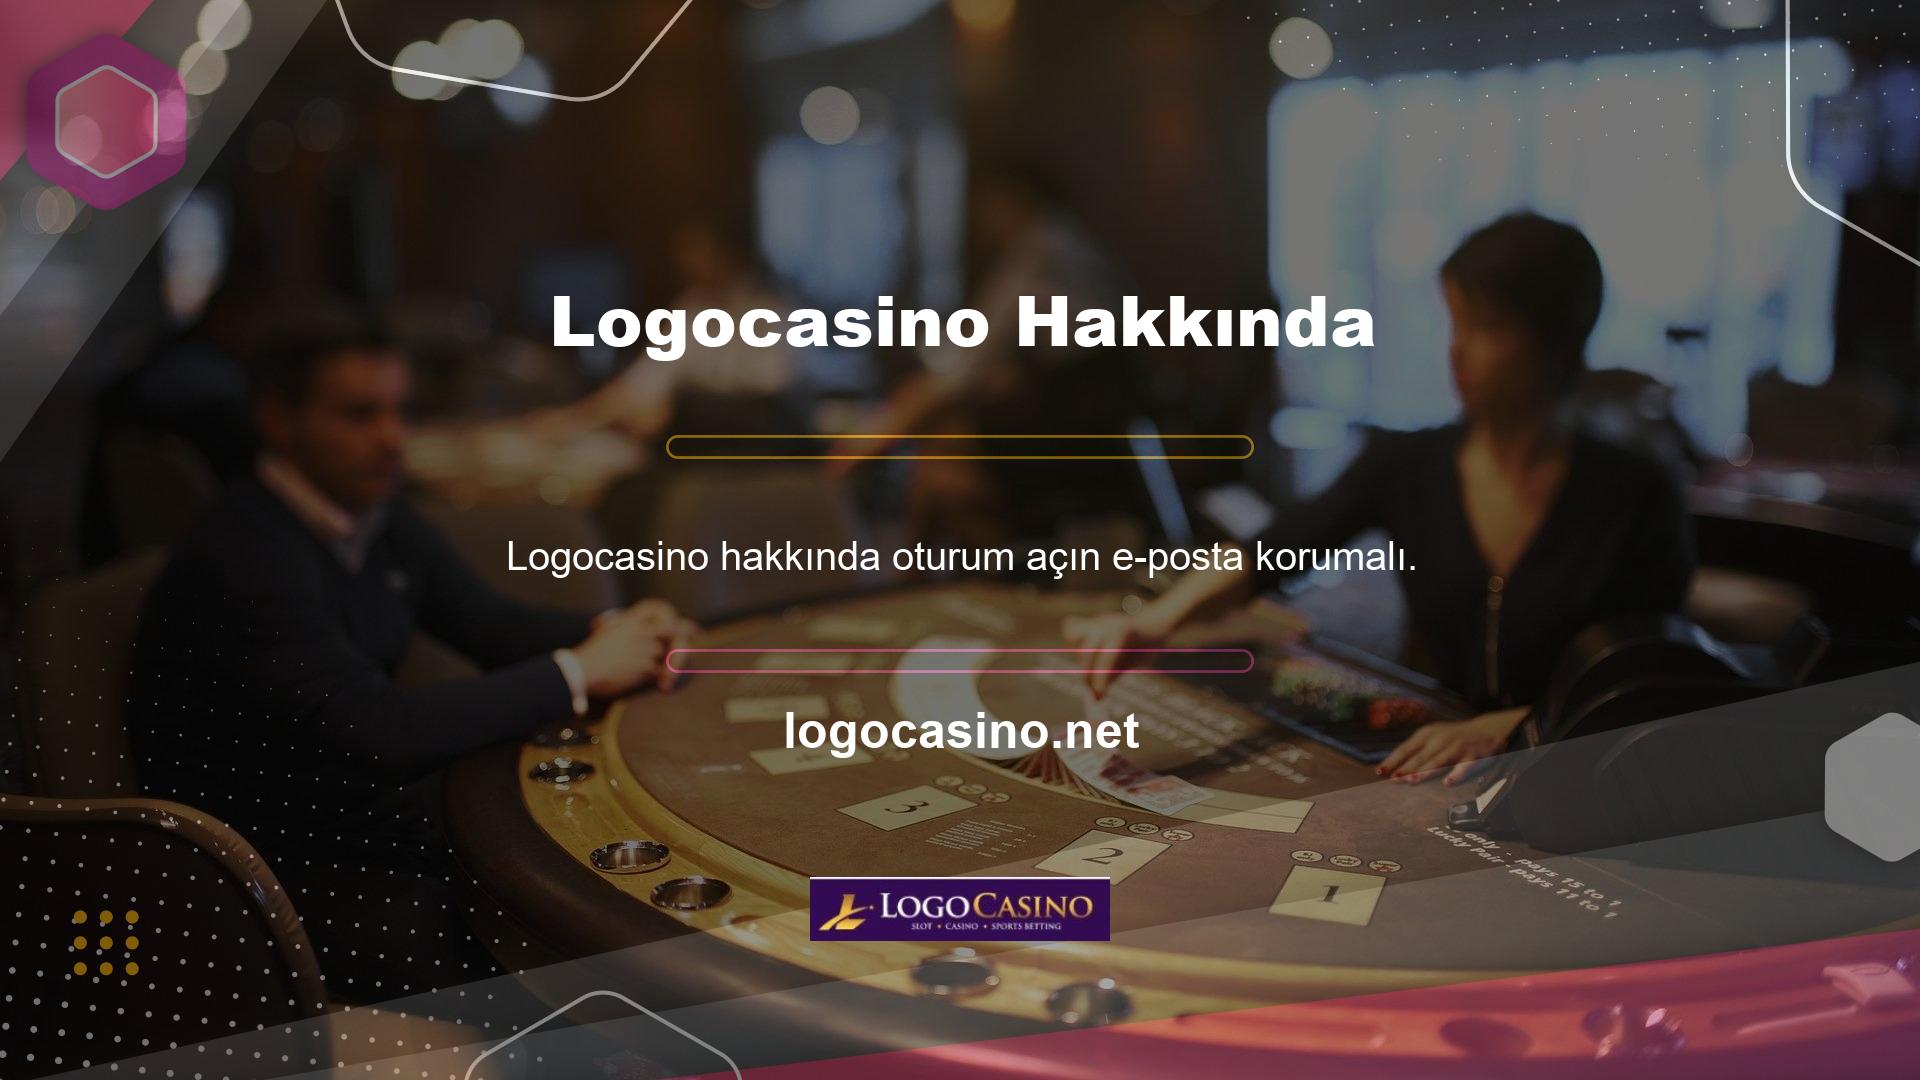 Logocasino, yeni listeler hakkında canlı güncellemeler sağlayan bir bahis sitesidir